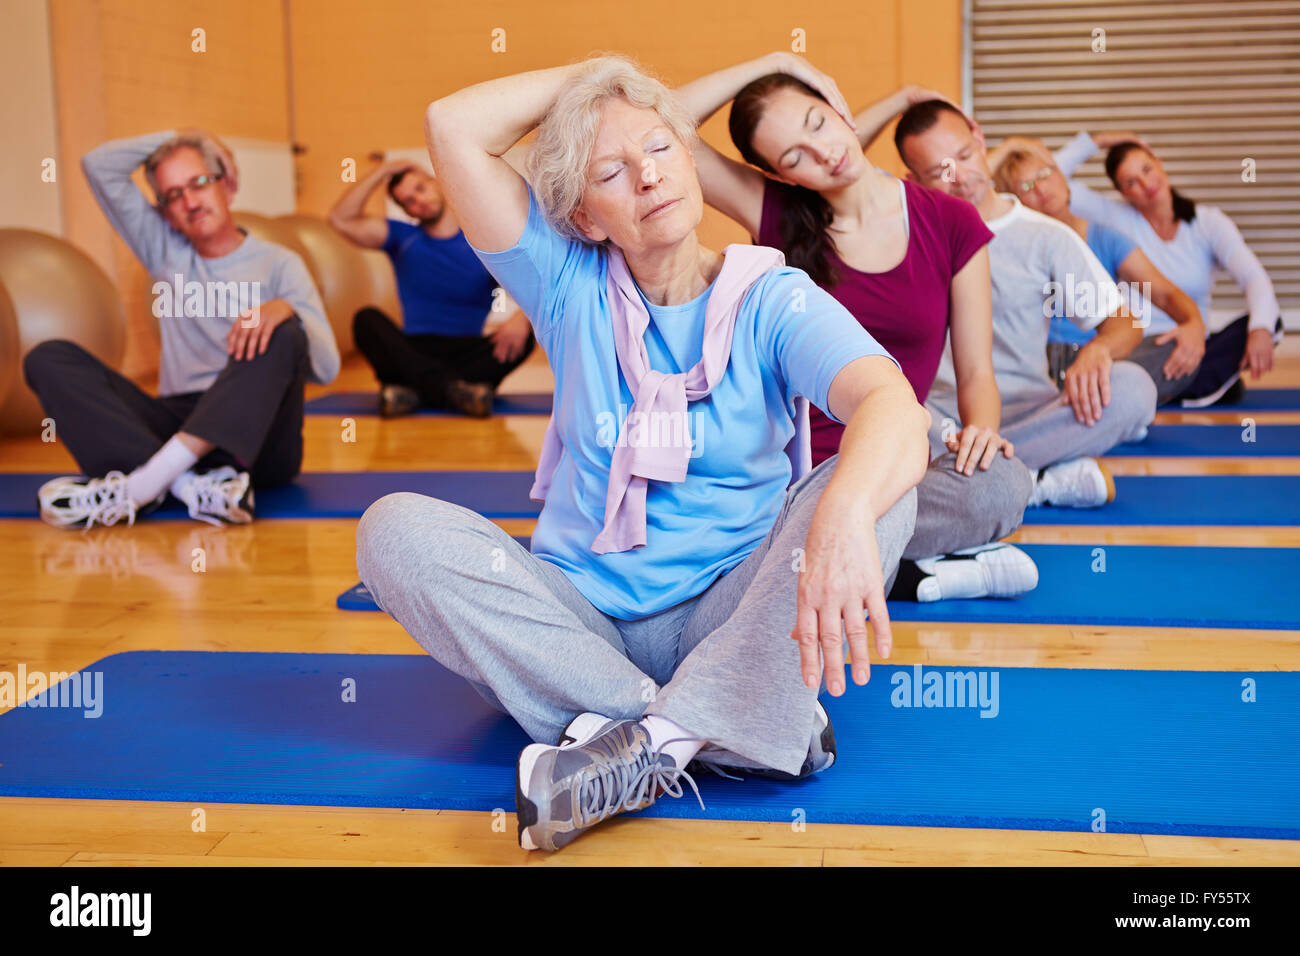 Gruppe tun stretching-Übungen, die auf der Rückseite training Klasse in einem Fitnesscenter Stockfoto